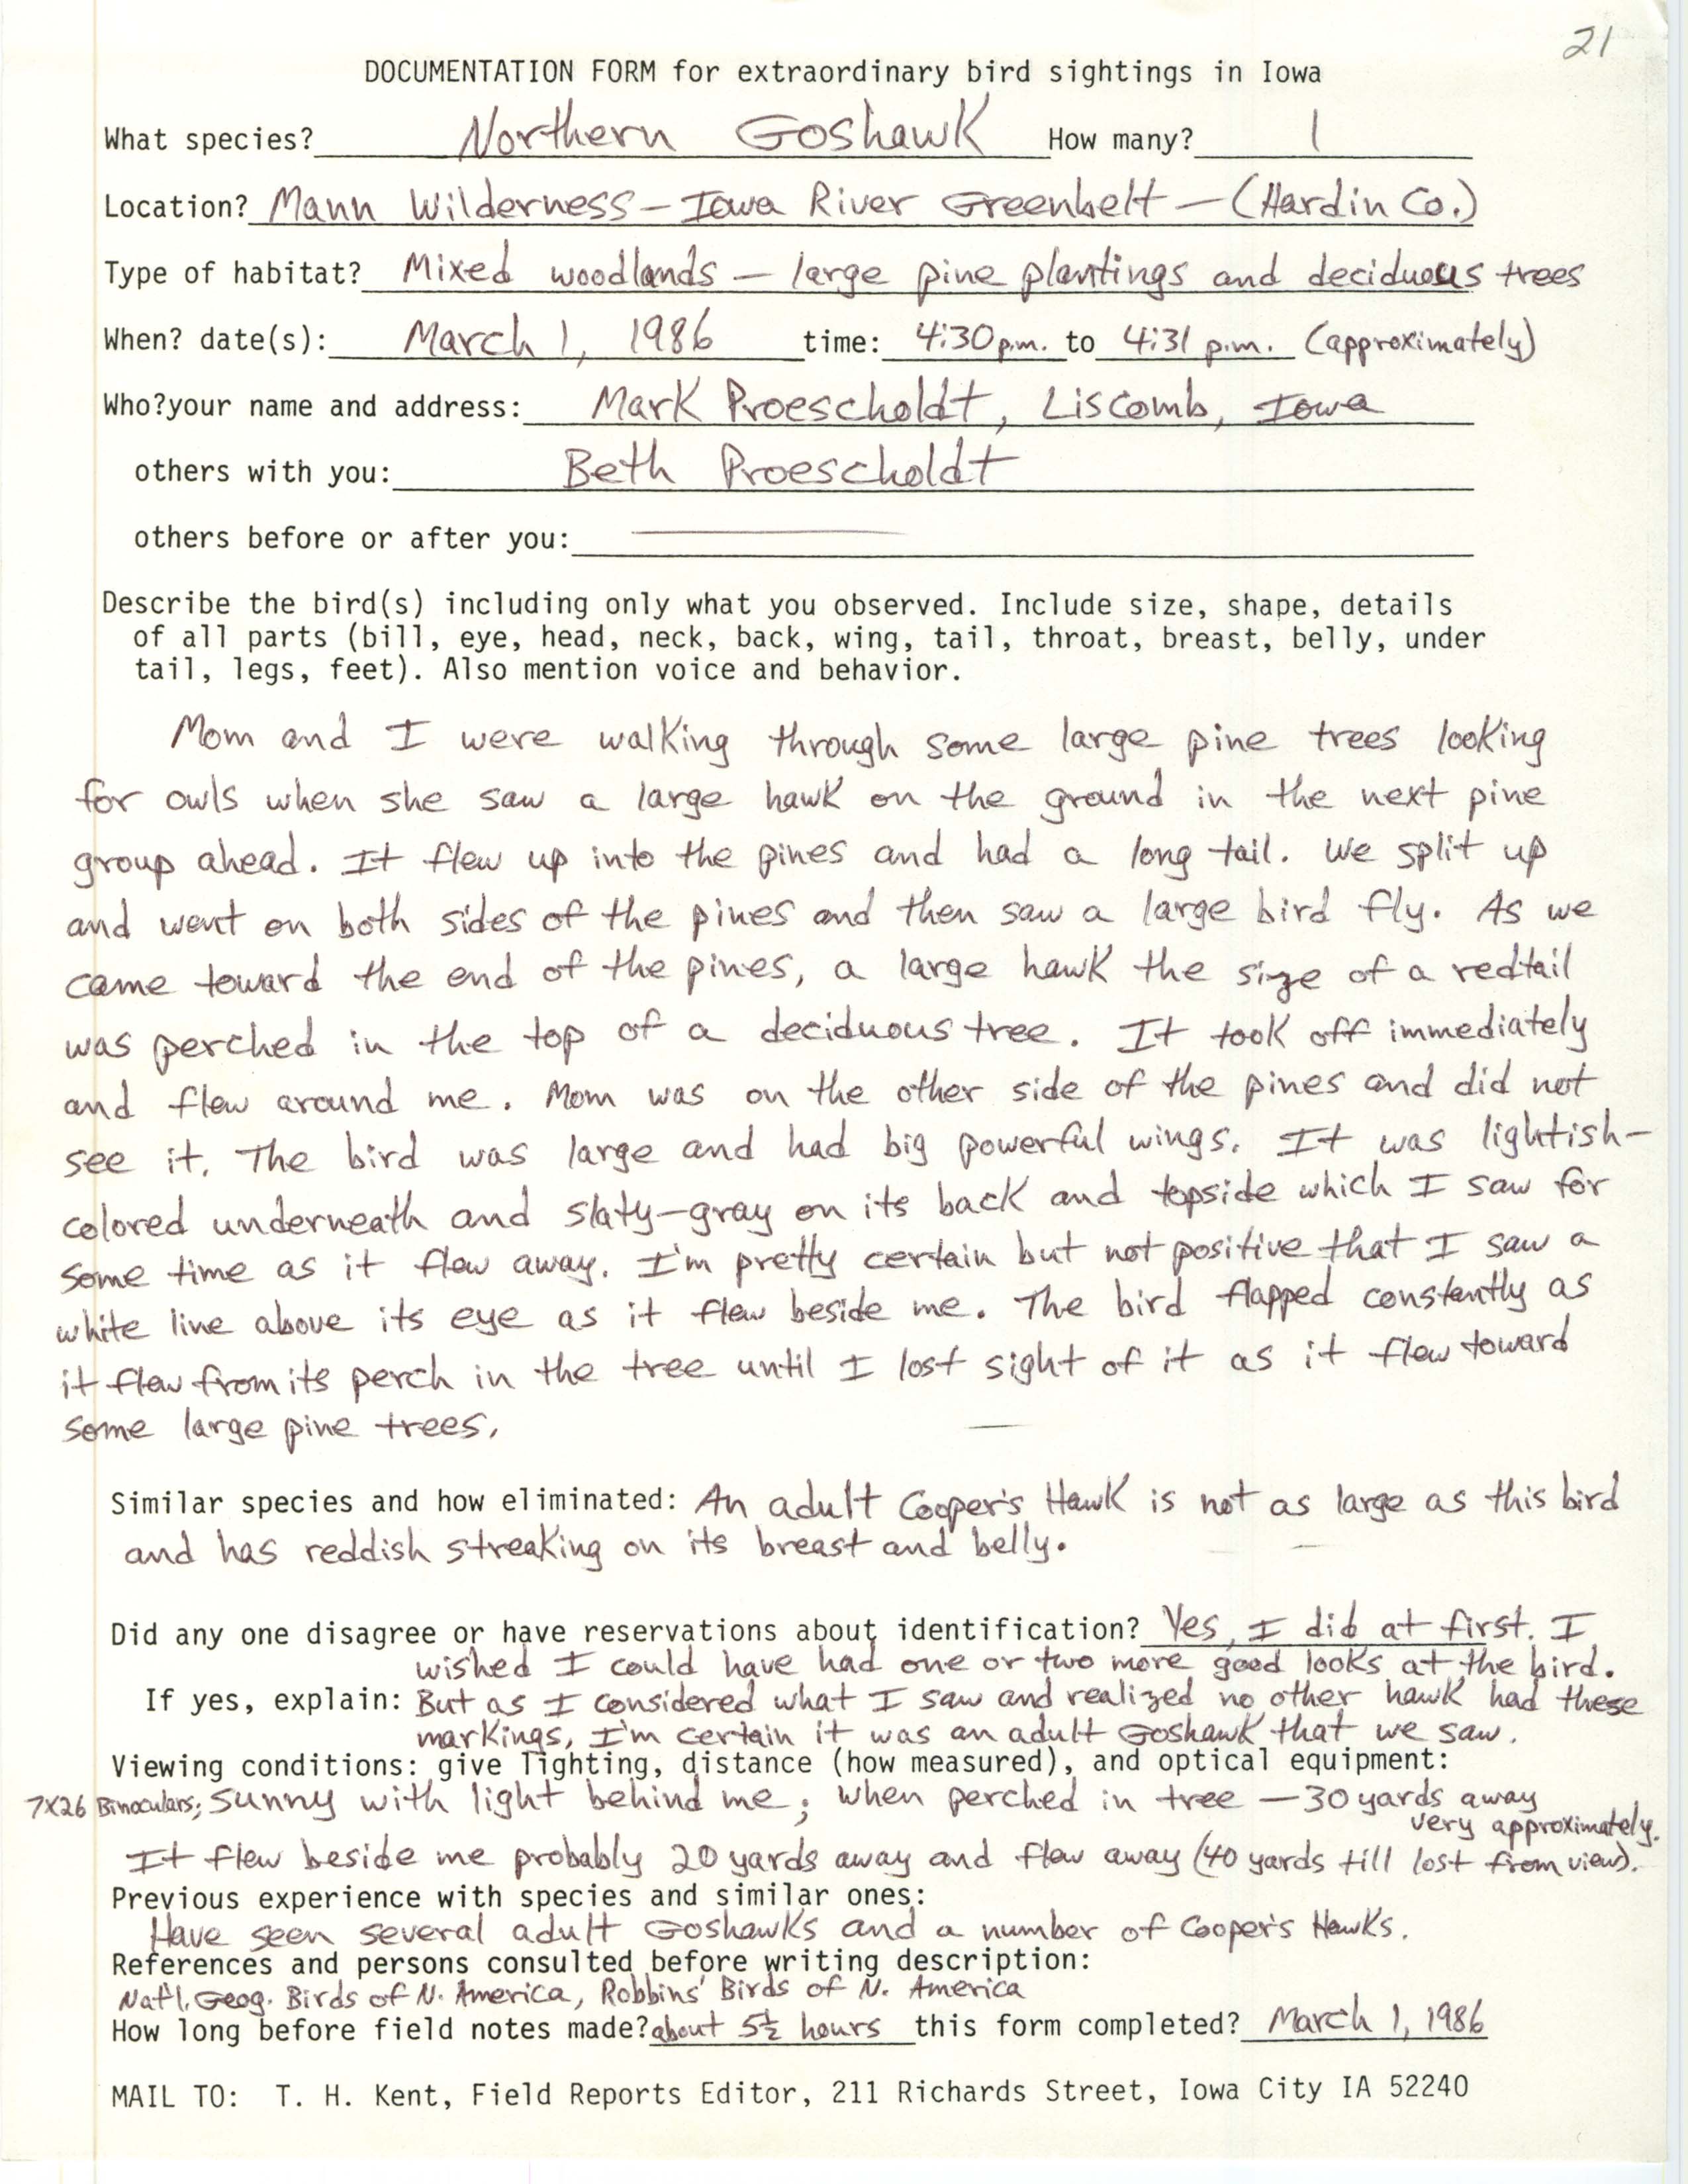 Rare bird documentation form for Northern Goshawk at Mann Wilderness, 1986